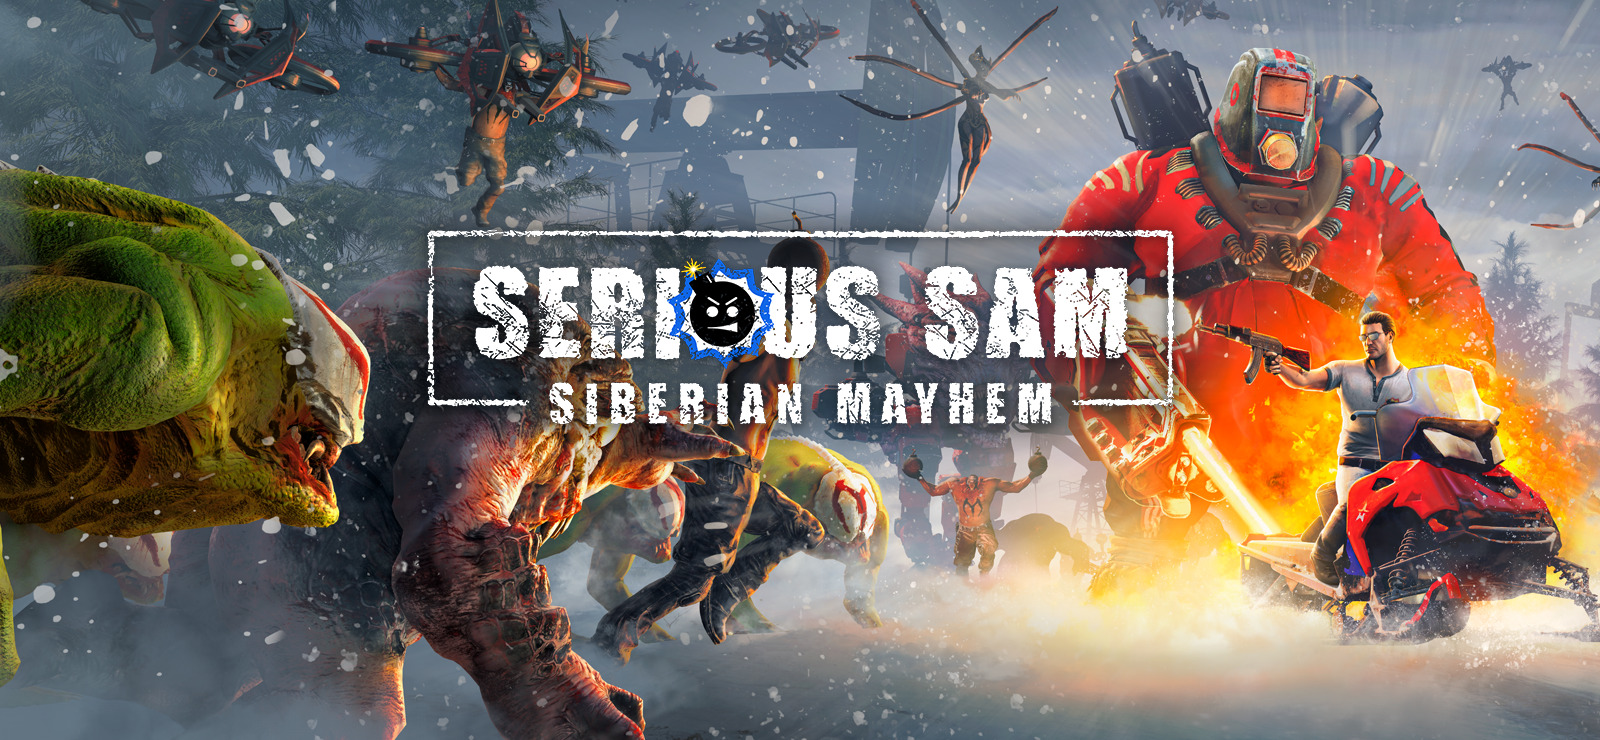 Download Serious Sam Siberian Mayhem v1.04-P2P